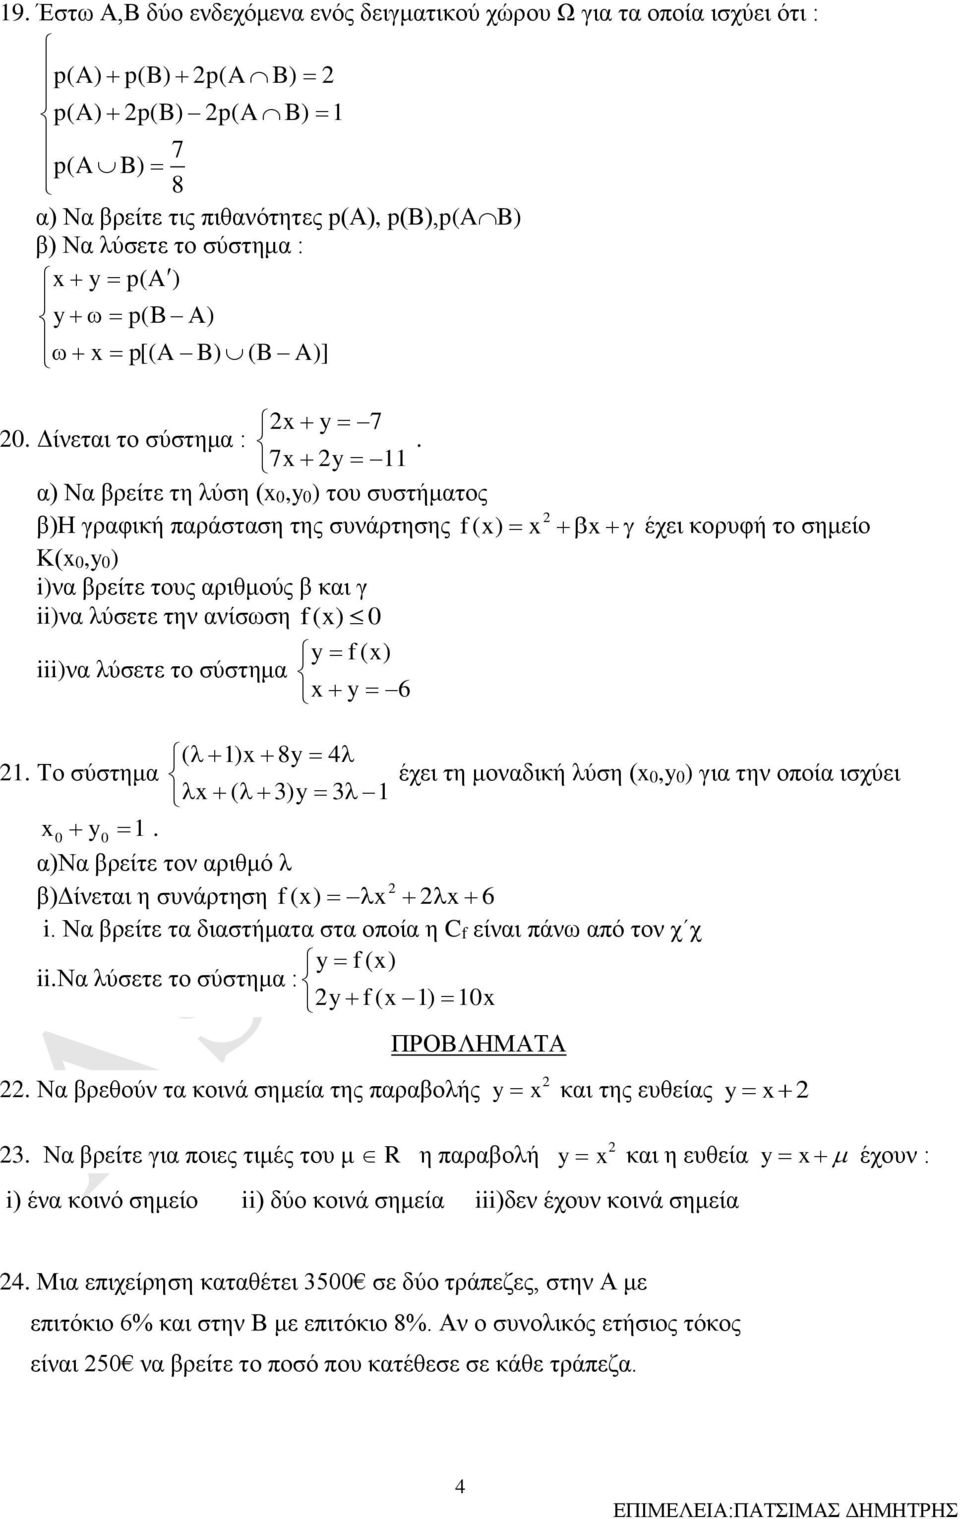 7x y 11 α) Να βρείτε τη λύση (x0,y0) του συστήματος β)η γραφική παράσταση της συνάρτησης f (x) x x έχει κορυφή το σημείο Κ(x0,y0) i)να βρείτε τους αριθμούς β και γ ii)να λύσετε την ανίσωση f(x) 0 y f